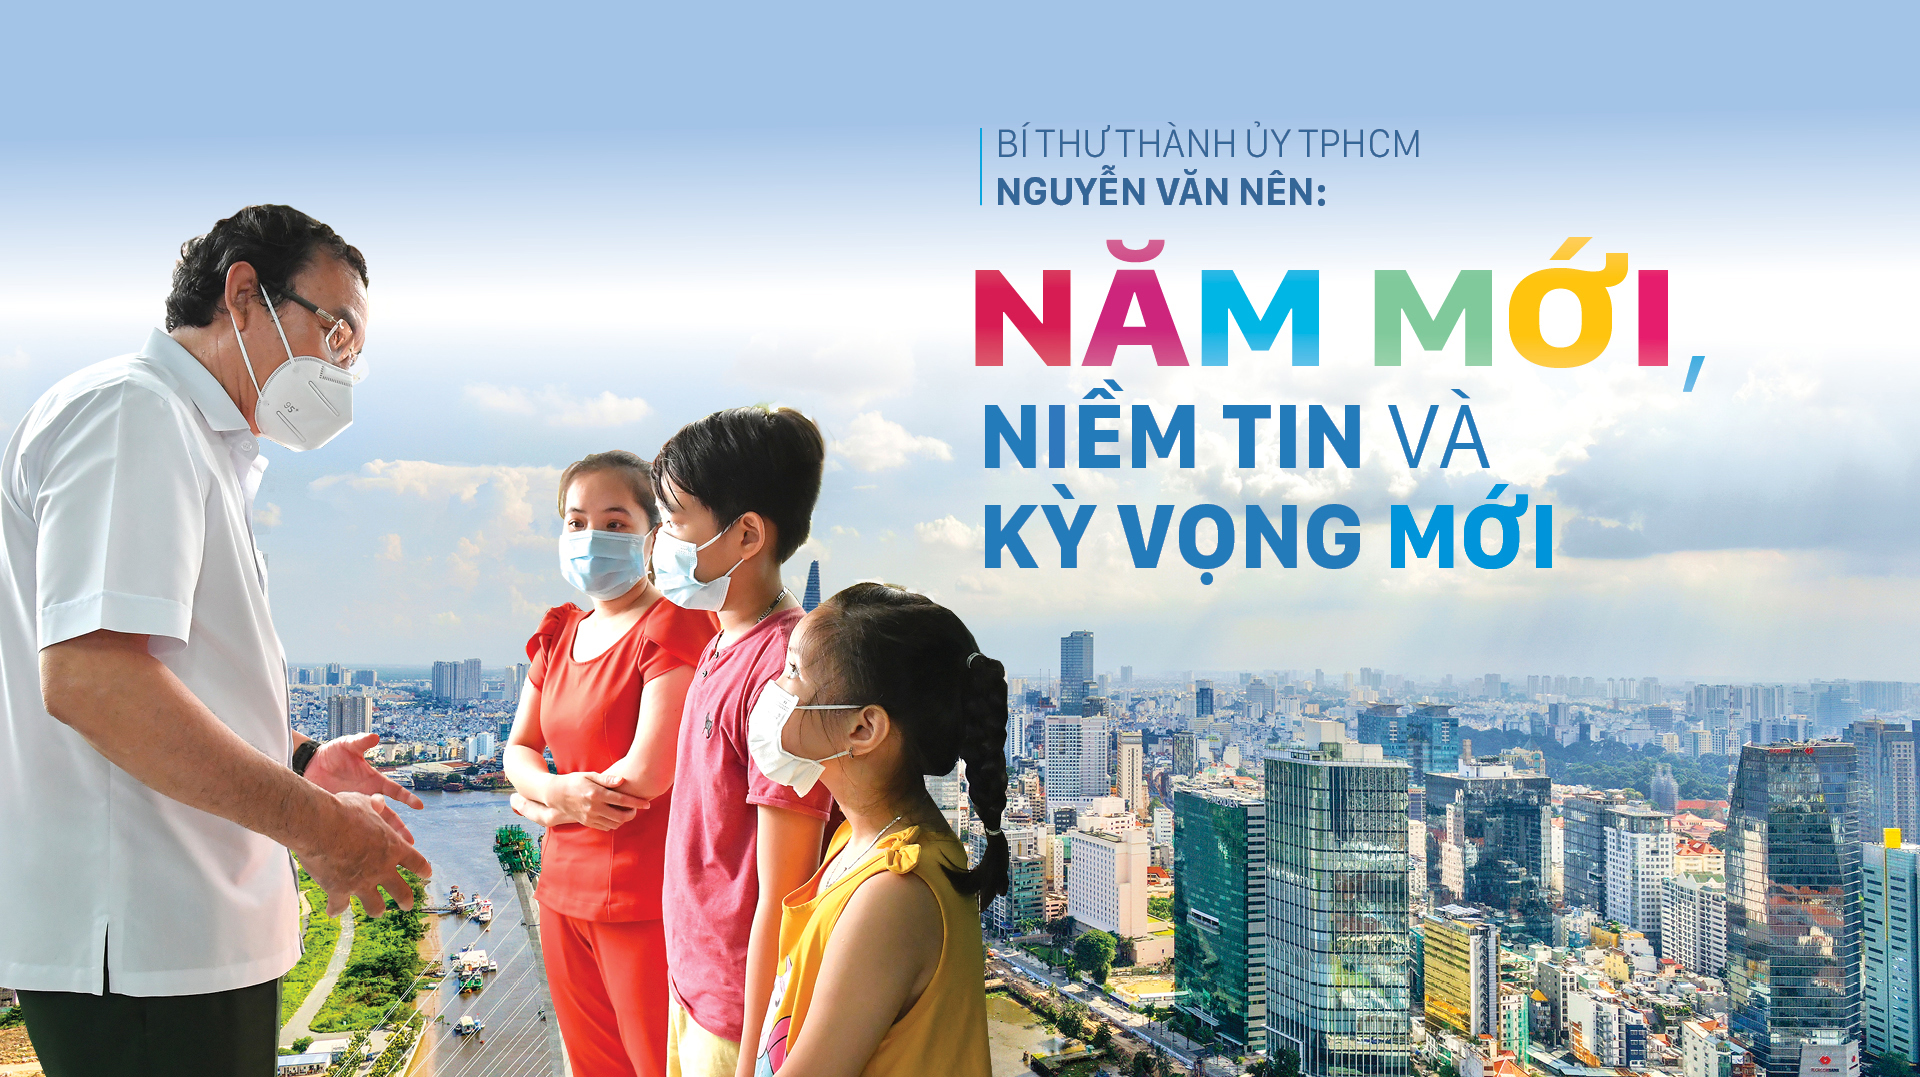 Bí thư Thành ủy TPHCM Nguyễn Văn Nên: Năm mới, niềm tin và kỳ vọng mới